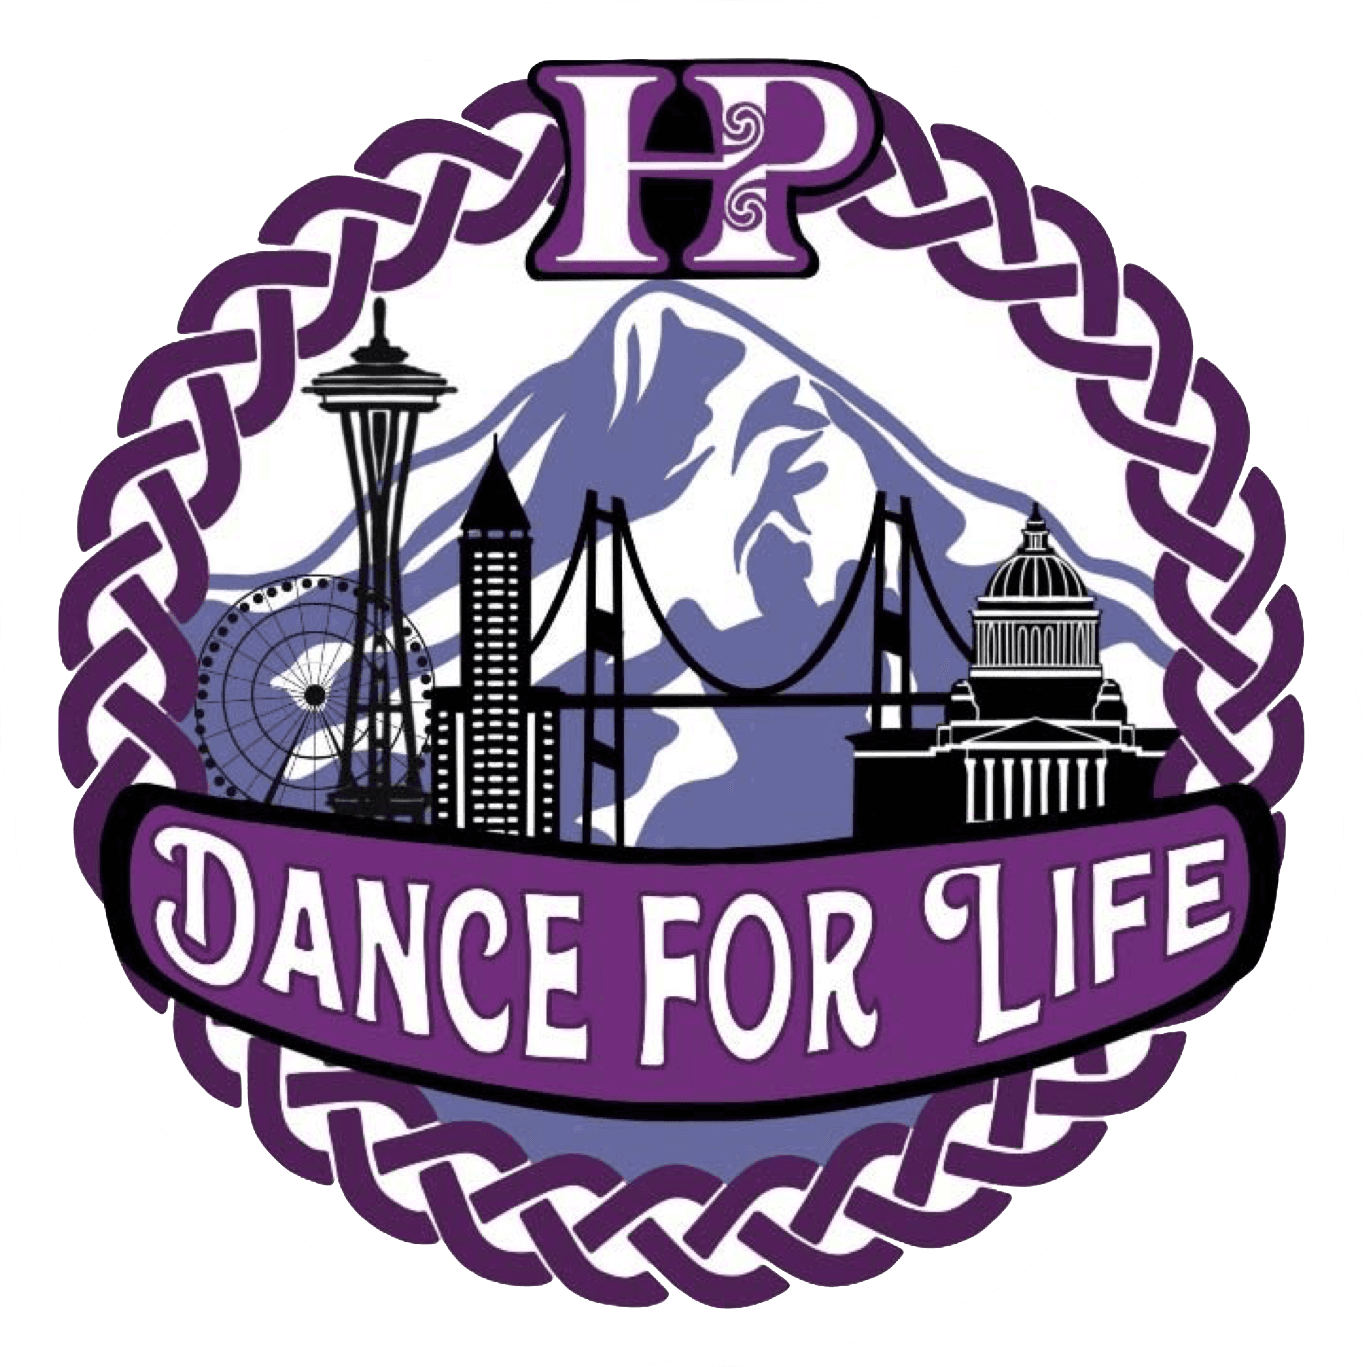 logo for Dance for Life Feis